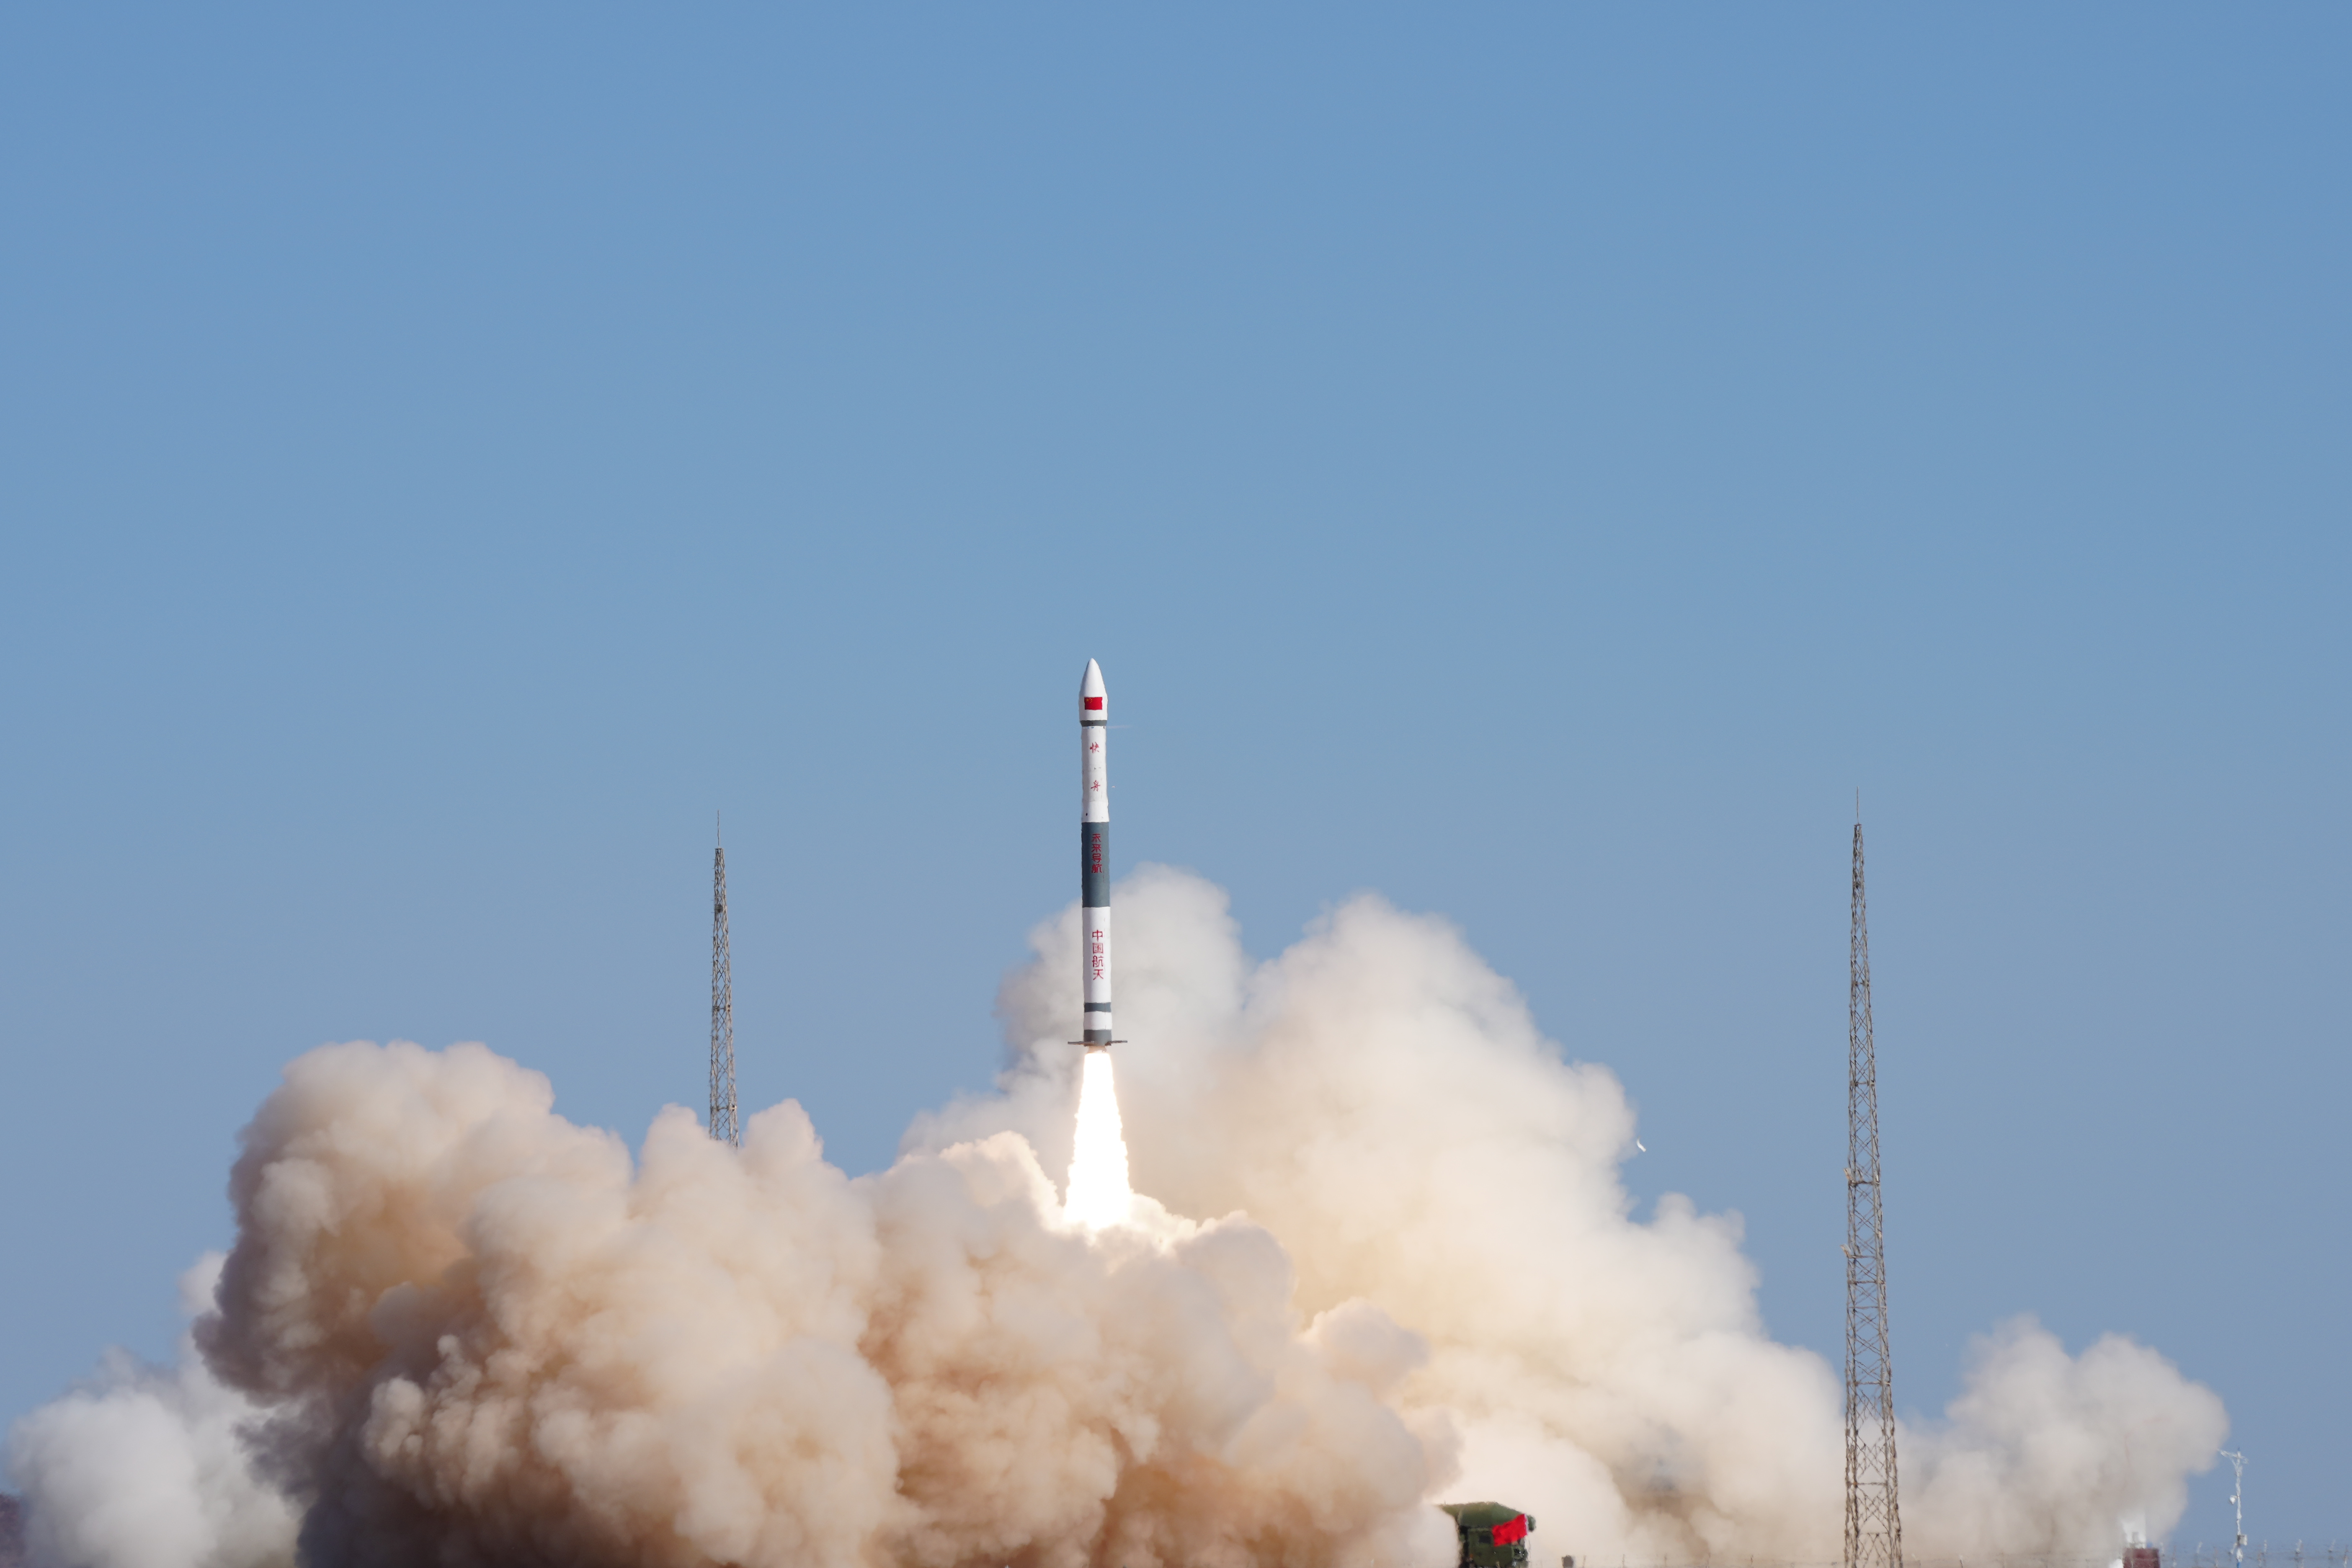 我国在酒泉卫星发射中心使用快舟一号甲运载火箭,成功将微厘空间低轨